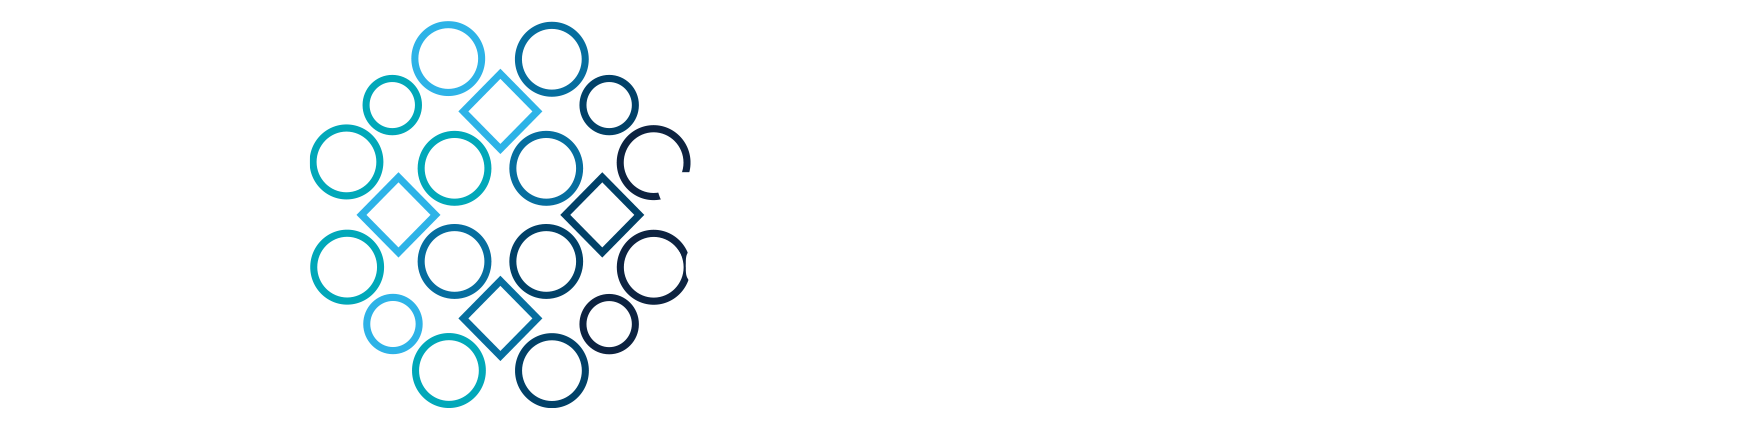 Congresso da OMD 2021